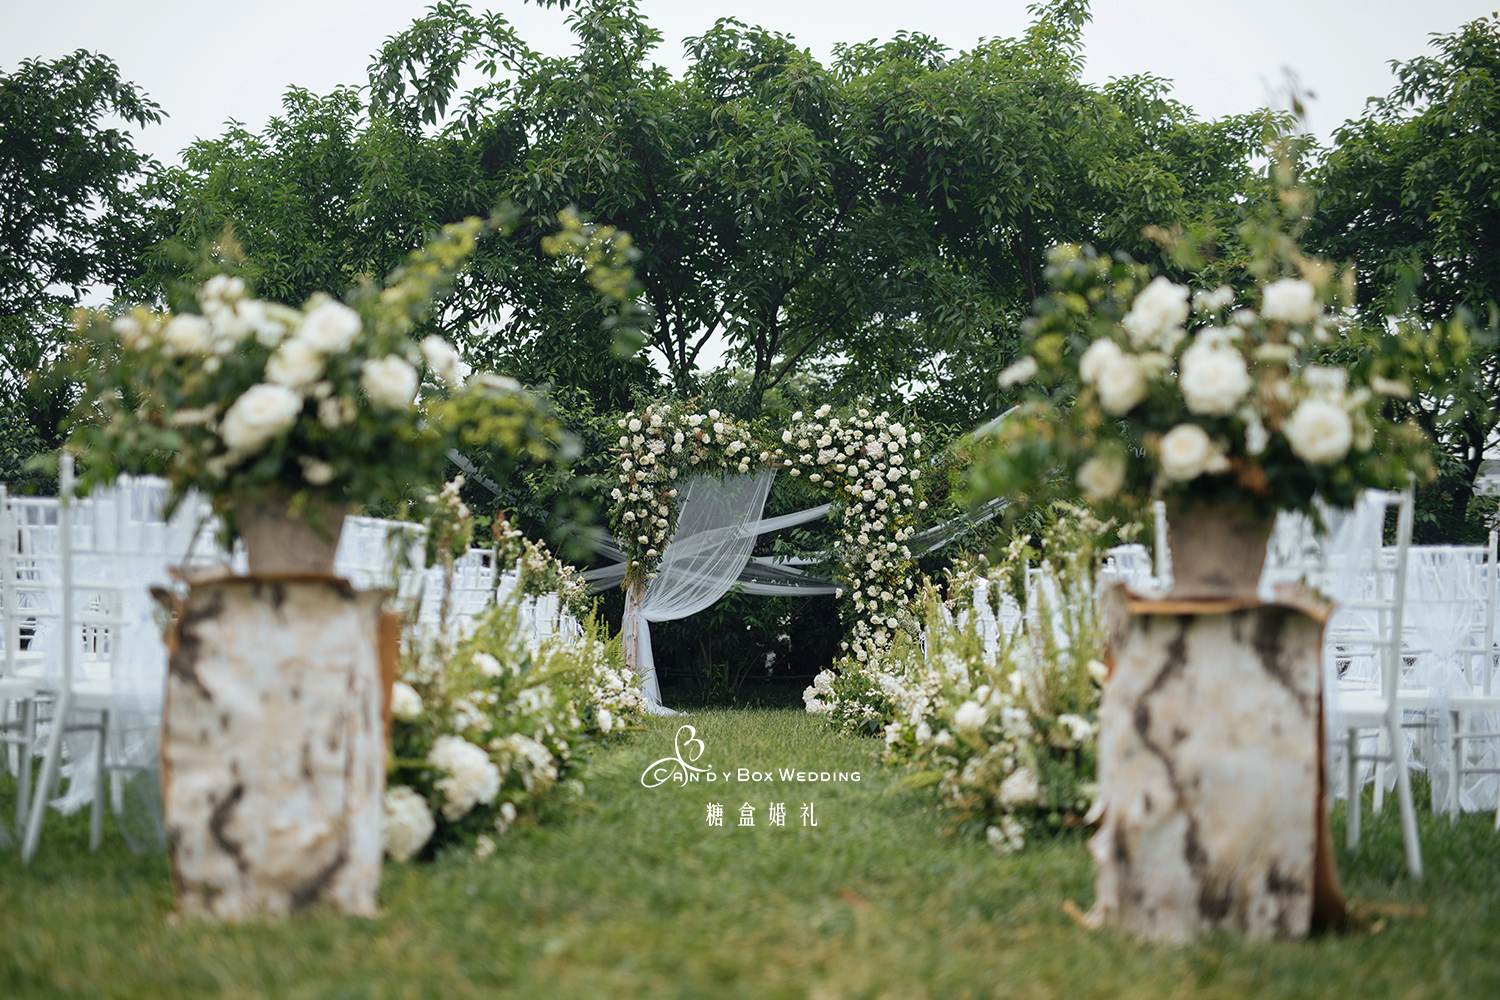 【新娘日记】打造一场美美哒户外婚礼~-结婚大本营-杭州19楼